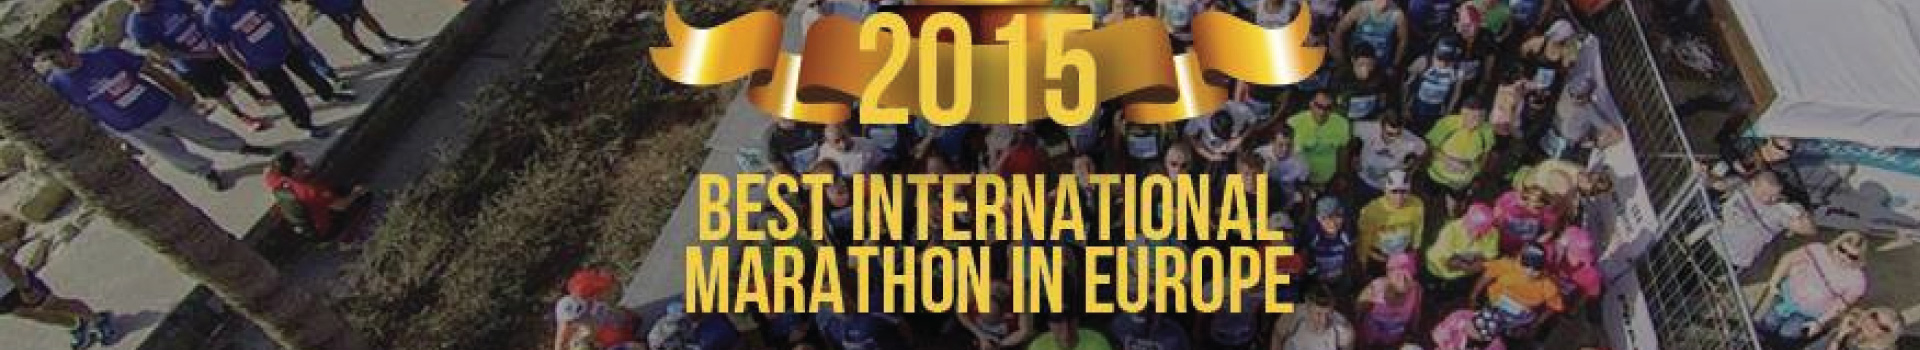 Марафон в Лимассоле признан лучшим МАРАФОНОМ В ЕВРОПЕ в 2015 году